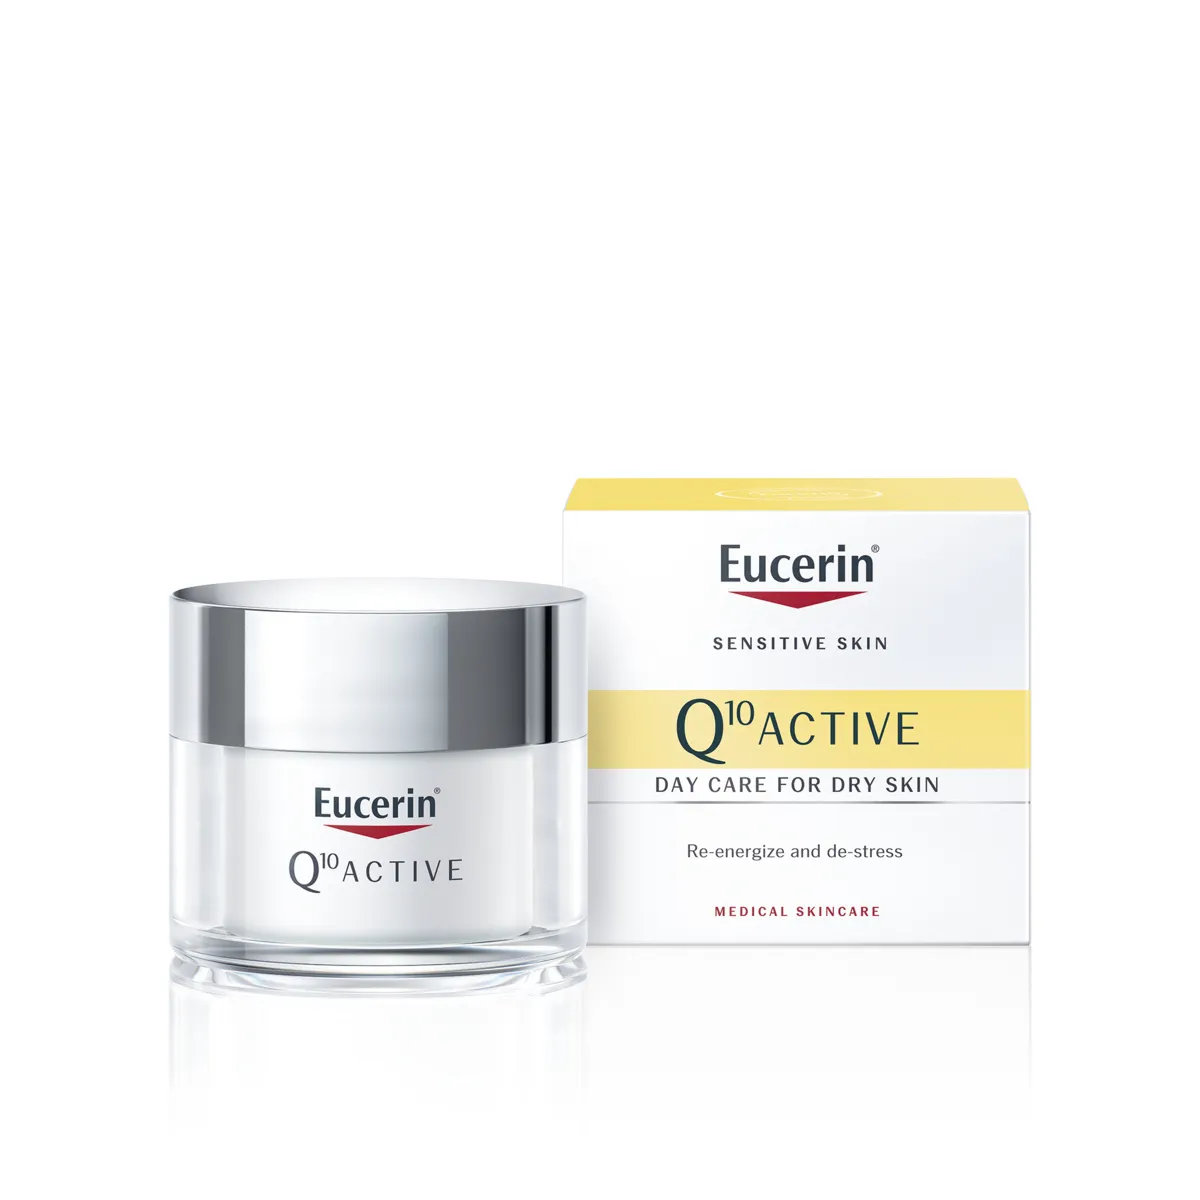 Eucerin Q10 ACTIVE denný krém proti vráskam 1×50 ml, pre citlivú pokožku